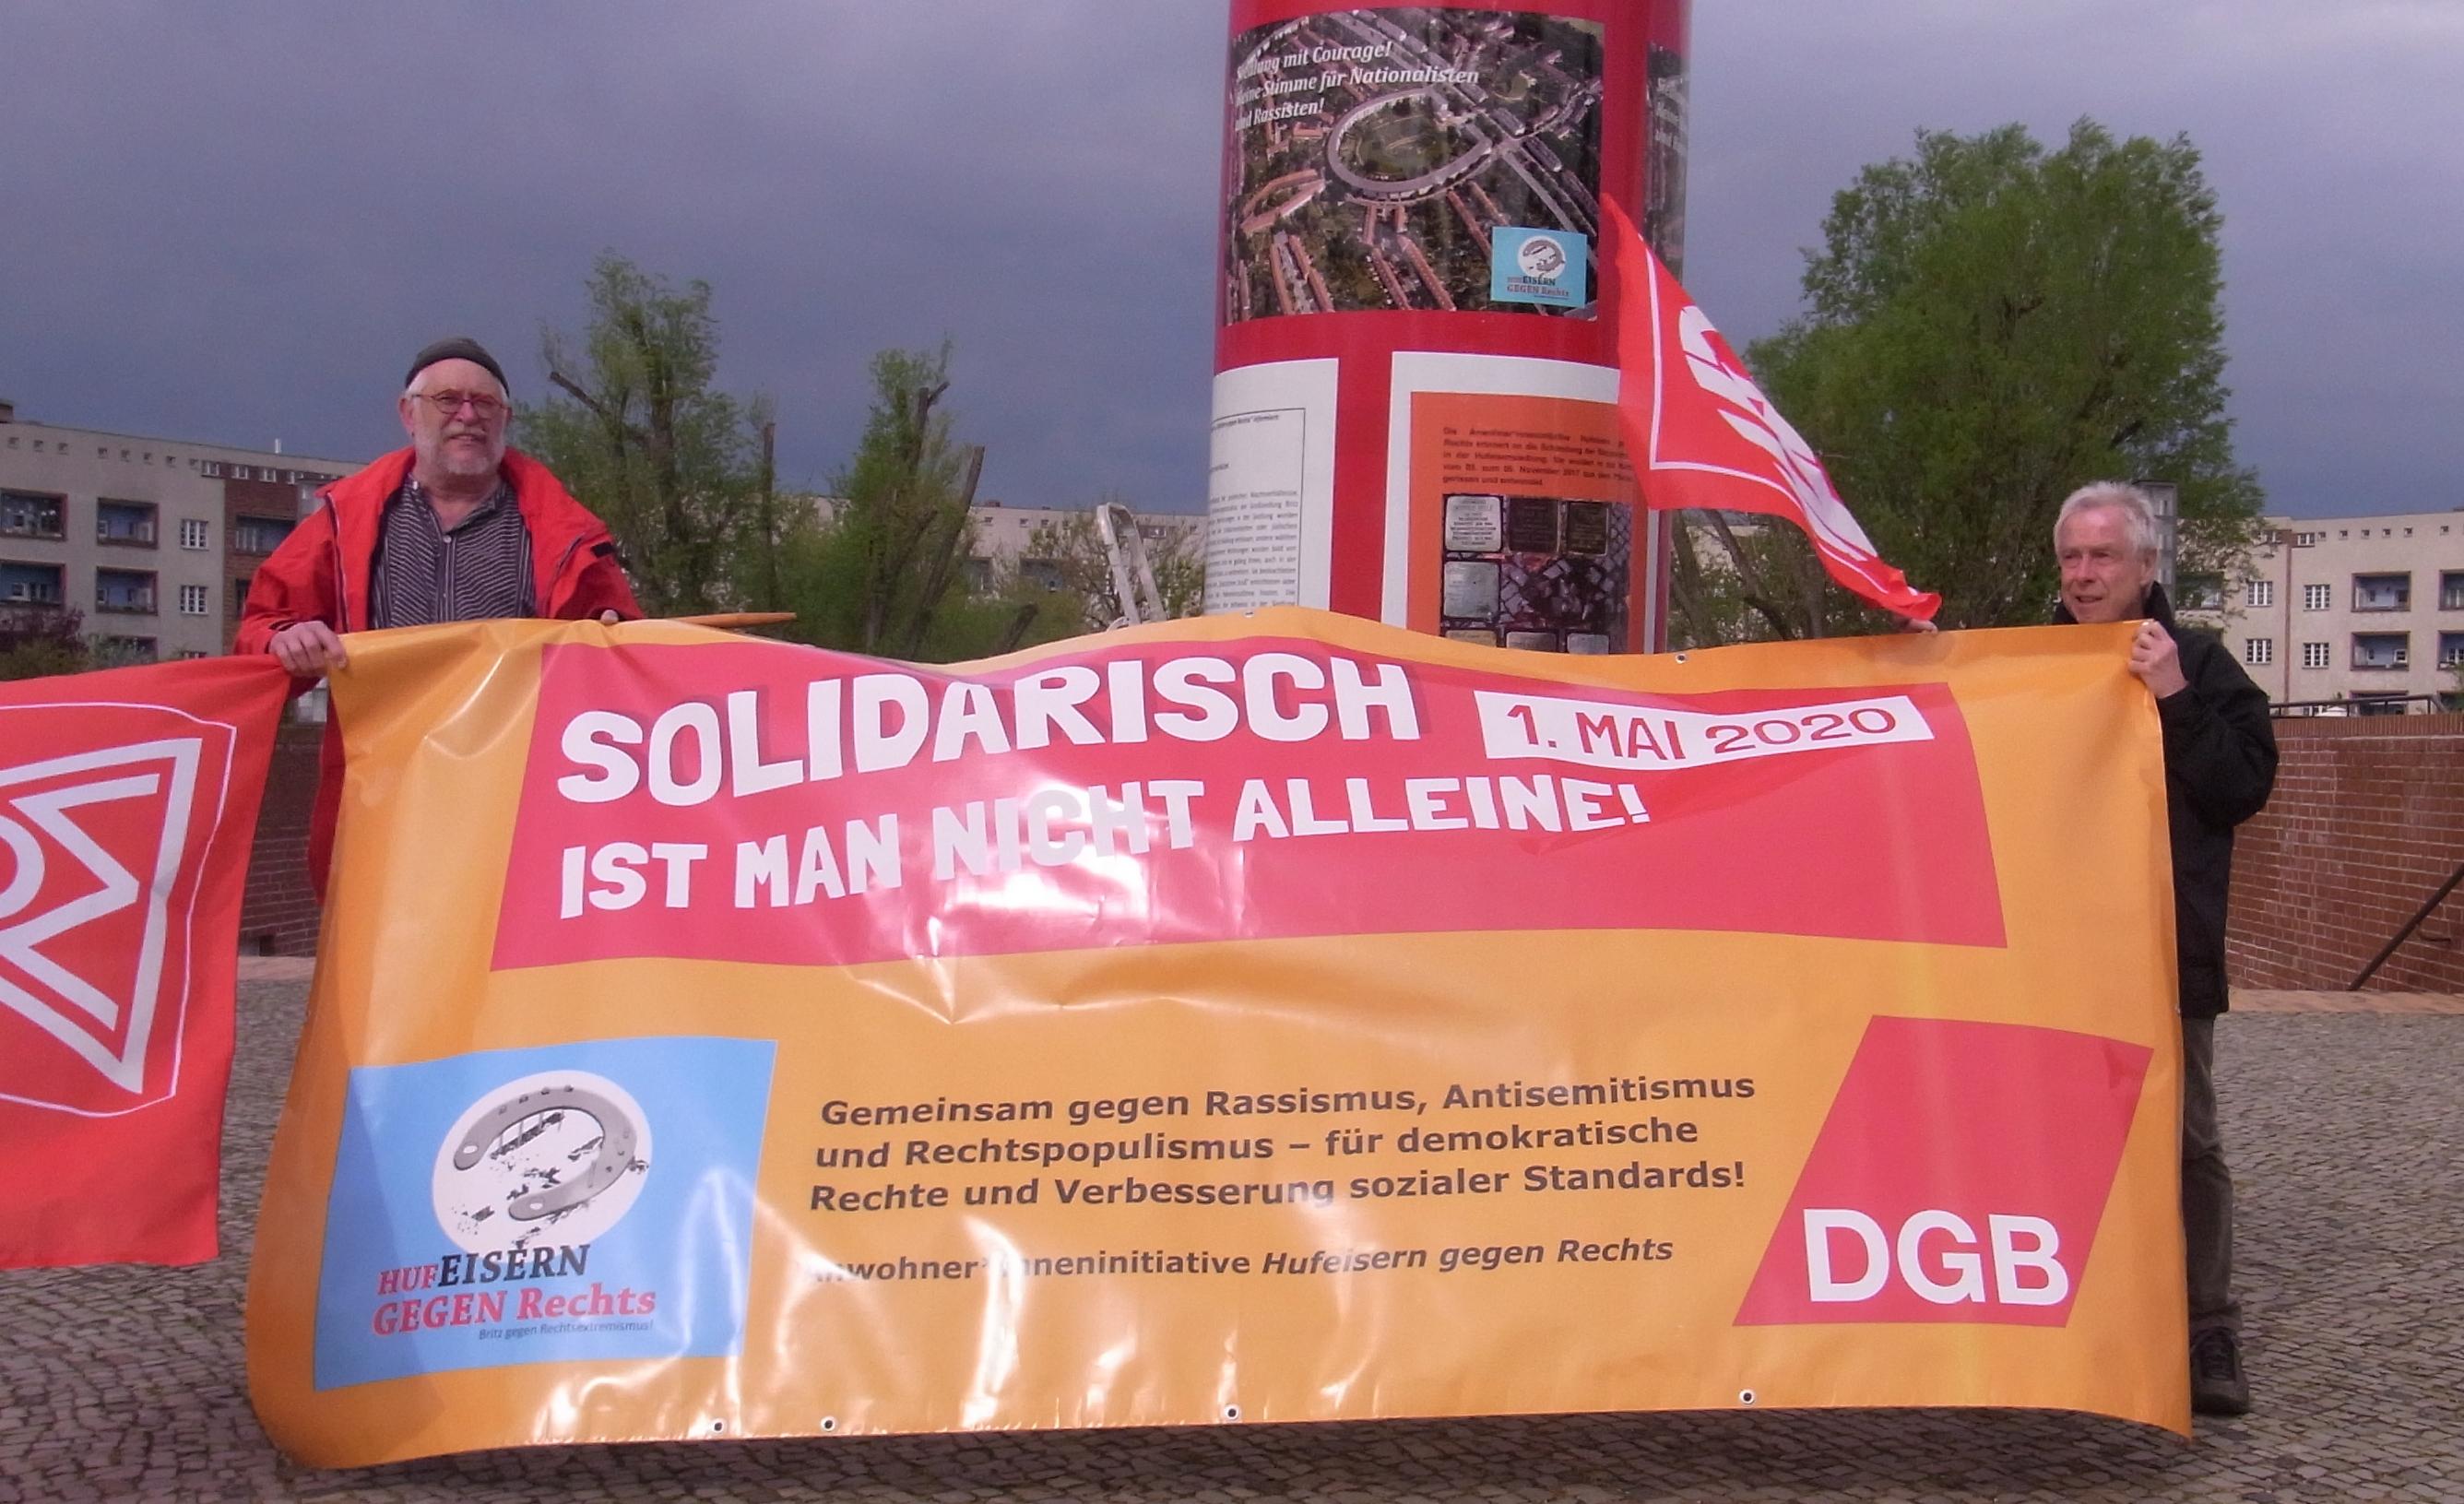 Das DGB Plakat wird von Aktivisten gezeigt